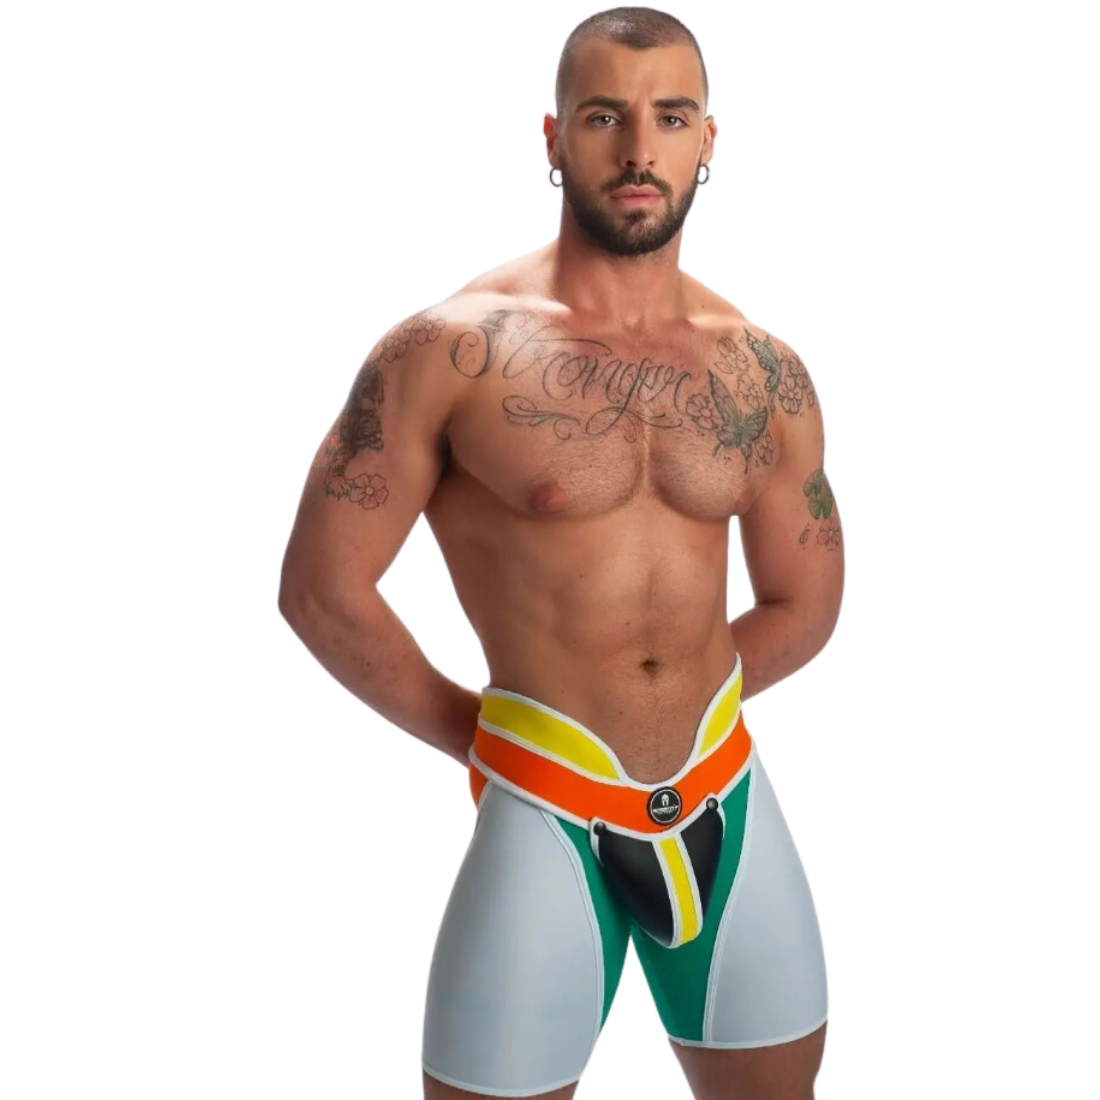 Unieke witte short met hoge tailleband en groene, gele, oranje en zwarte accenten, ontworpen door het Italiaanse modehuis Sparta’s Harness perfect voor gay mannen en te koop bij Flavourez.